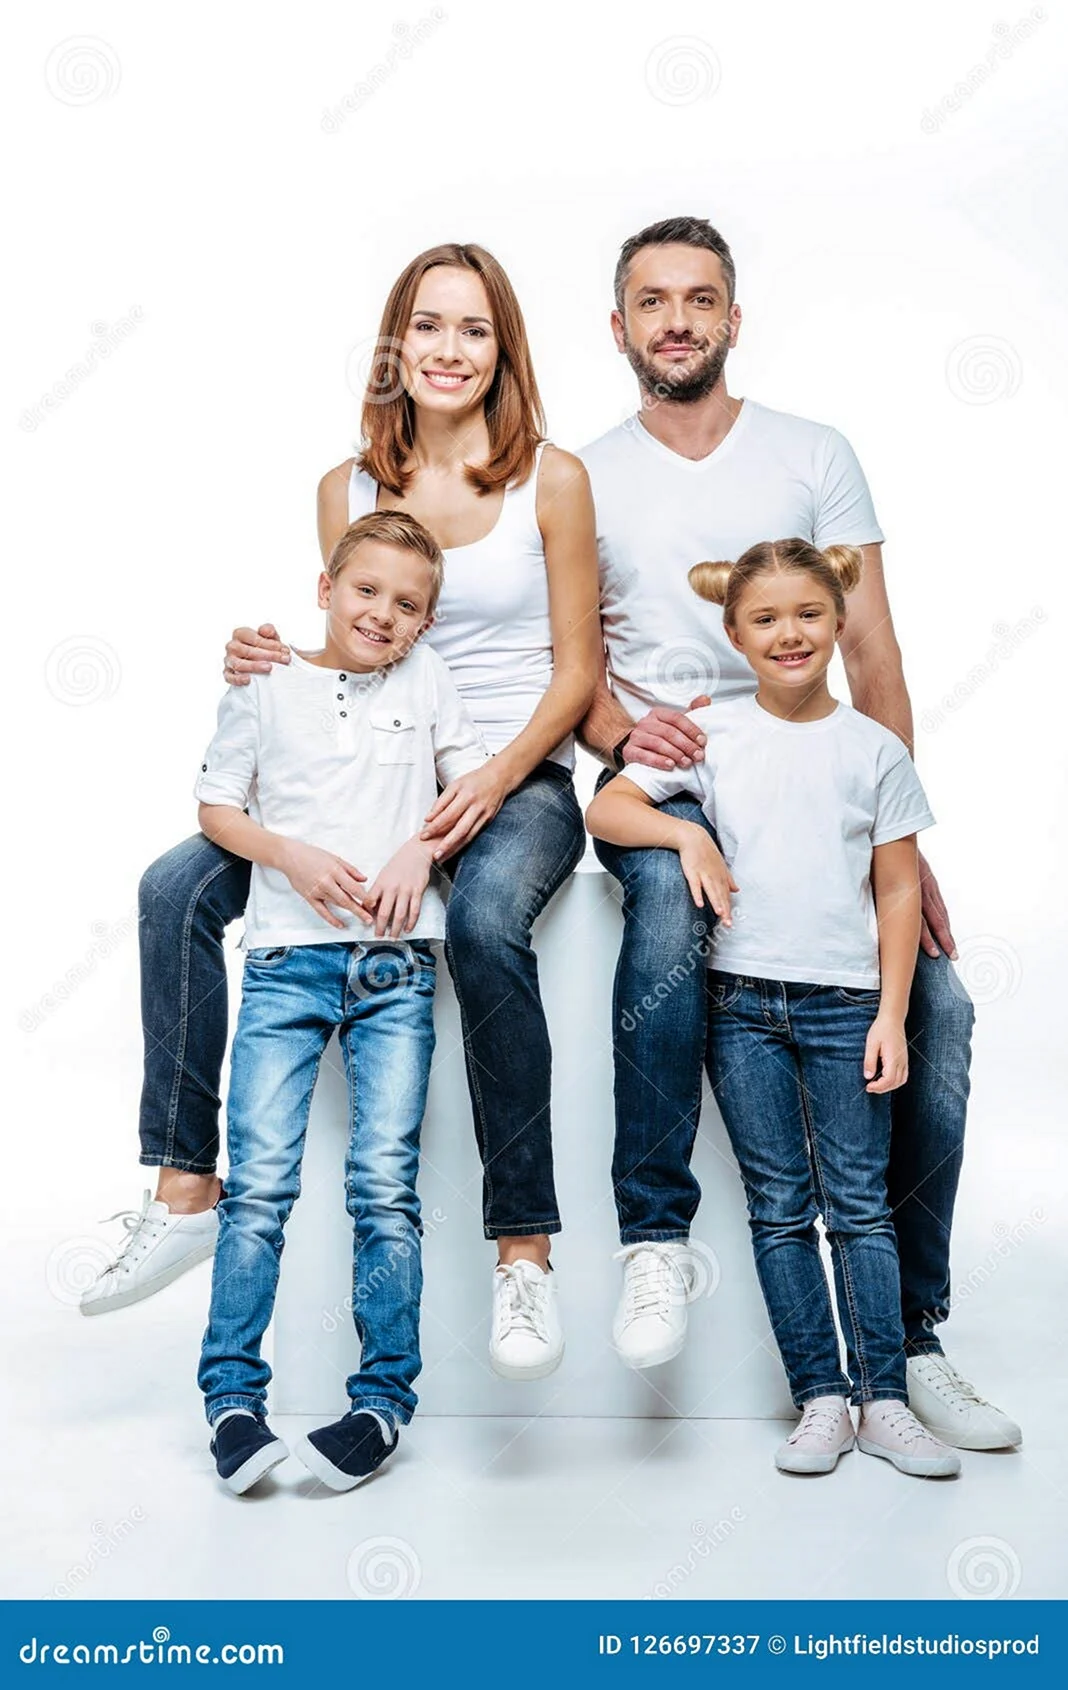 Семейная фотосессия в джинсах